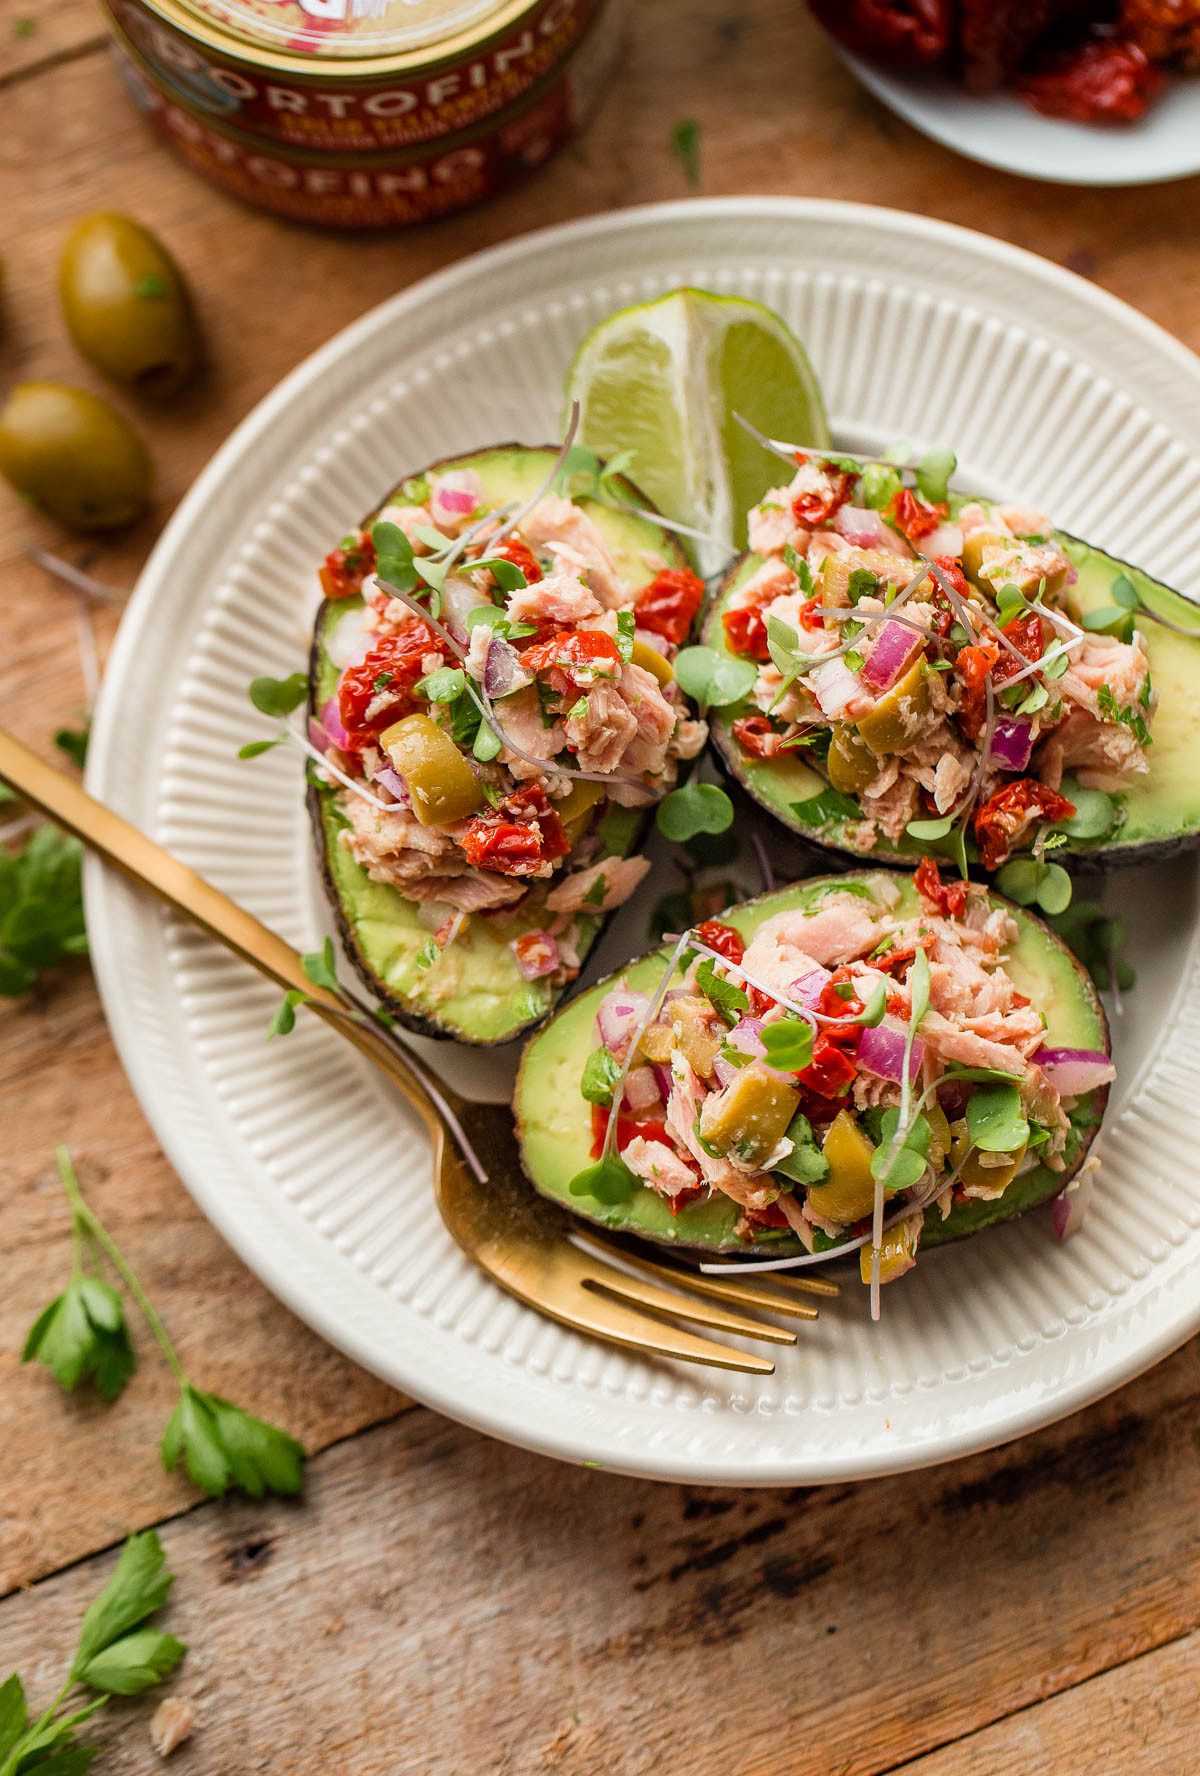 Healthy Recipes With Avocado
 Tuna Avocado Boats A Beautiful Plate